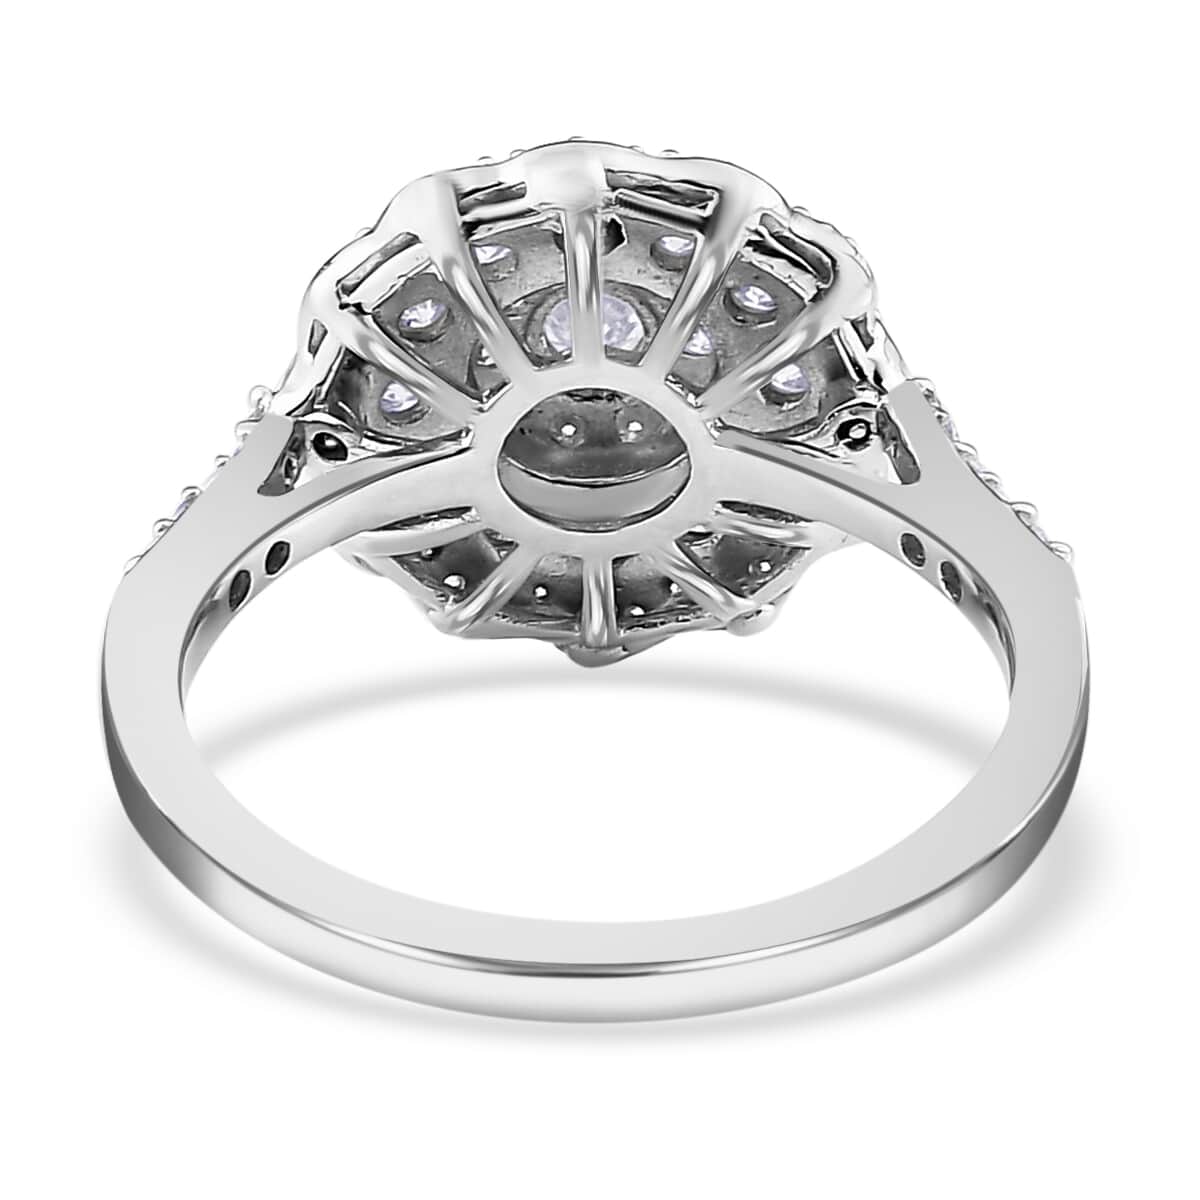 Buy Moissanite Floral Ring | Moissanite Ring | Cocktail Ring |Platinum ...